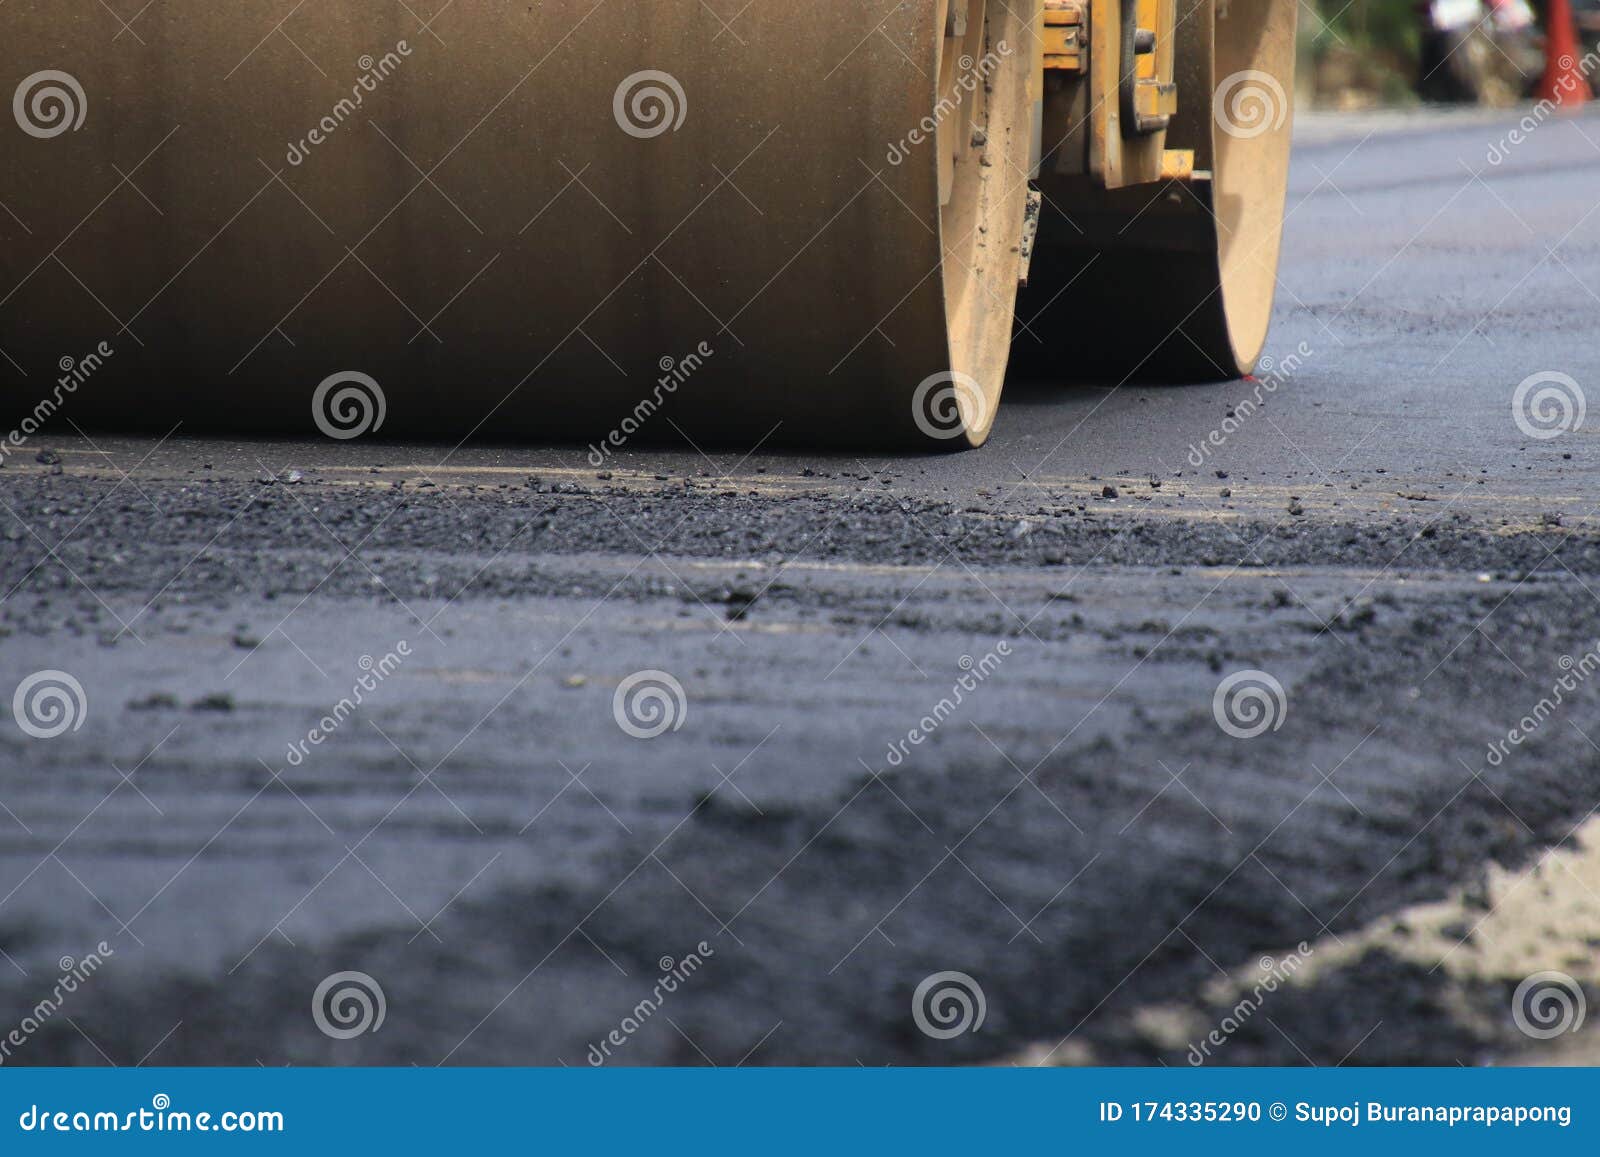 road construction asphalt road by worker and roller machine. asphalt road background